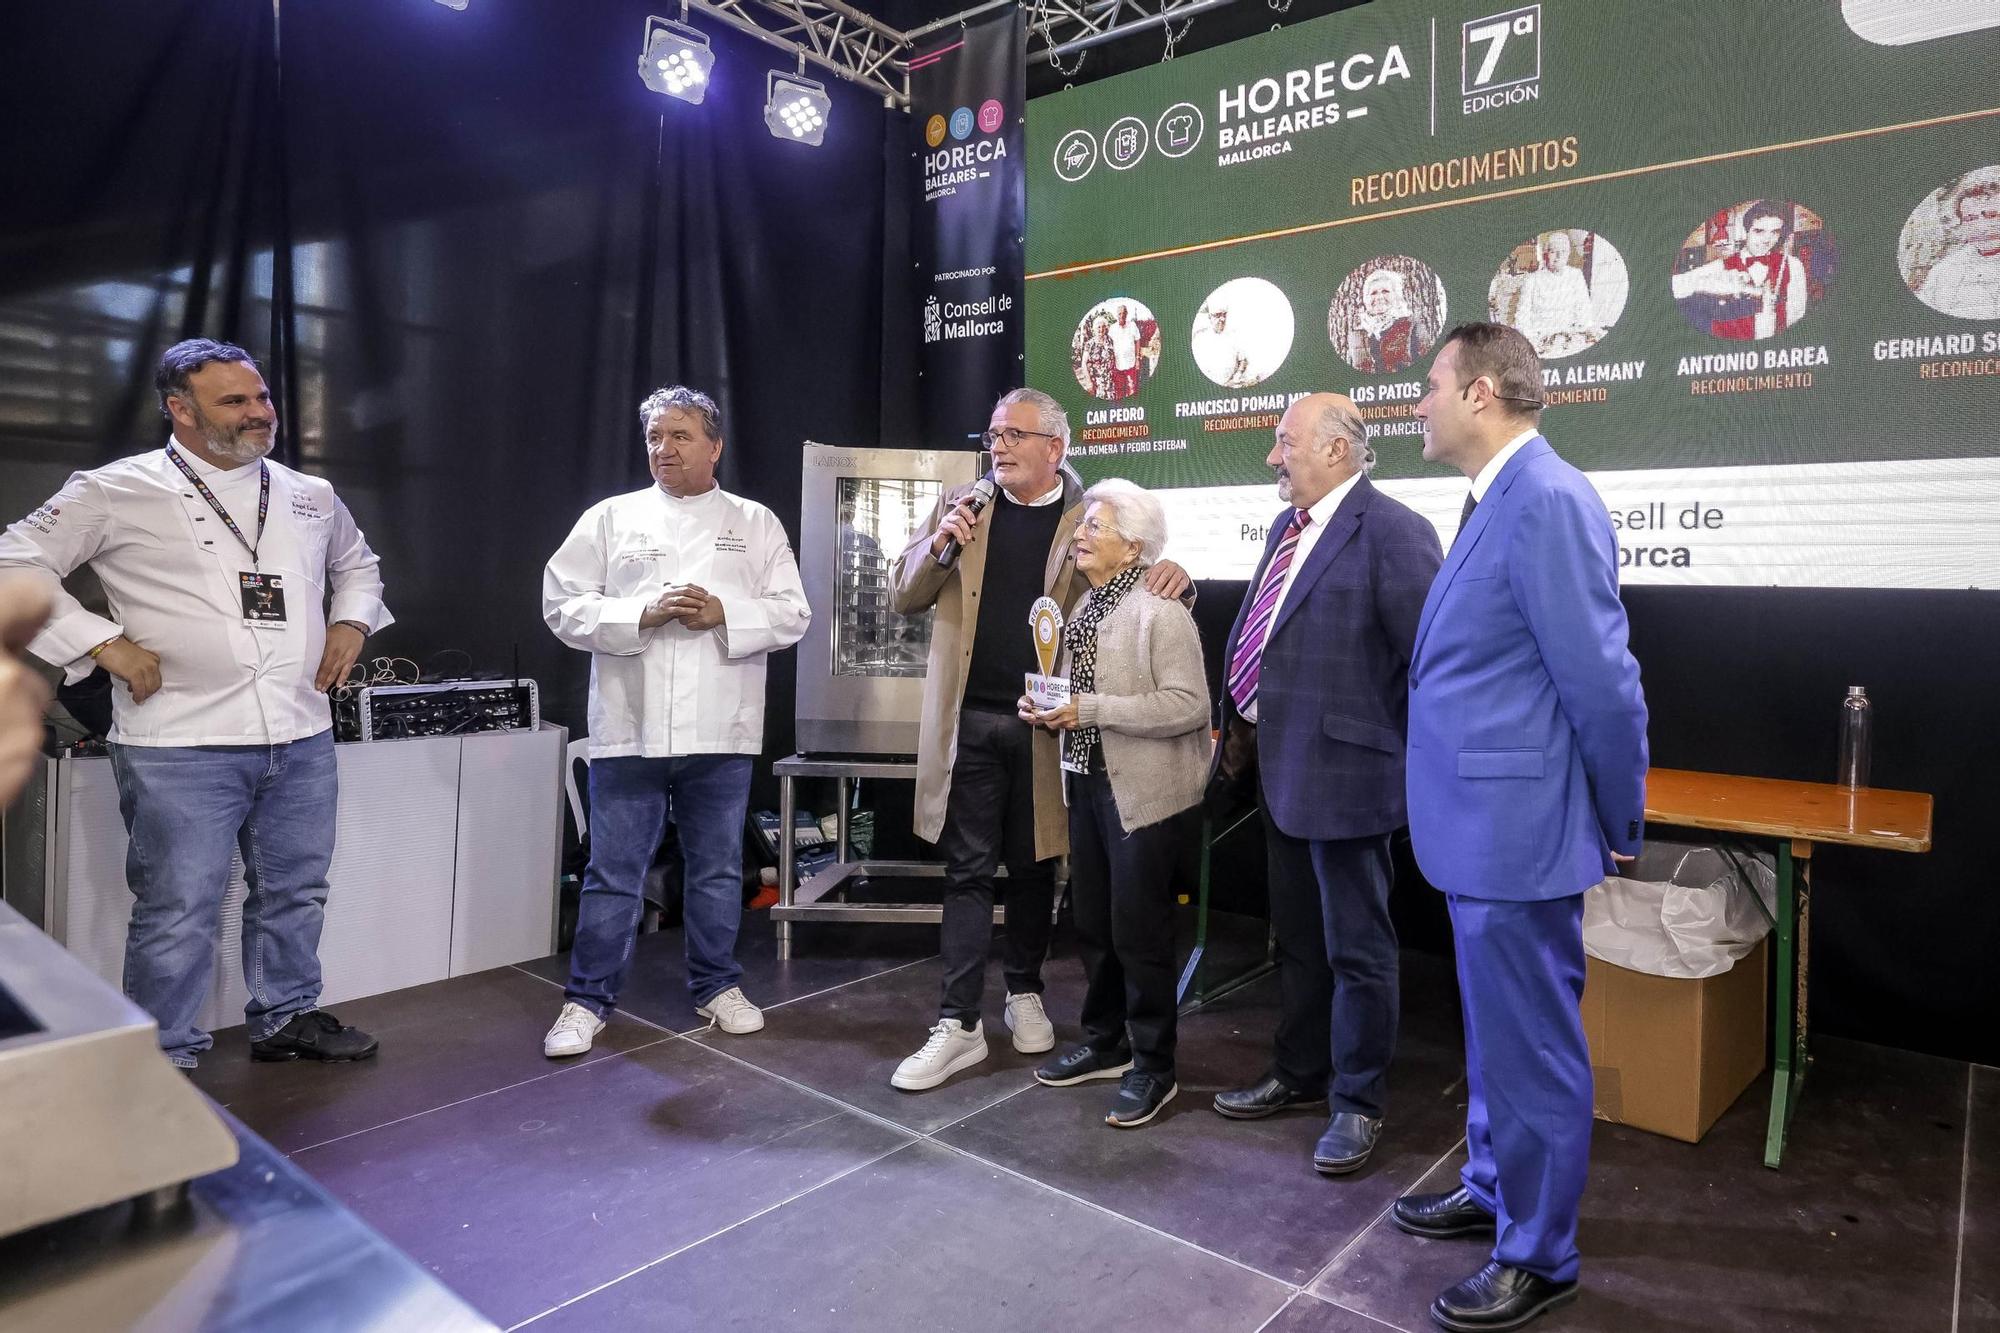 Estrellas Michelin y mesones históricos reciben un homenaje en la feria Horeca